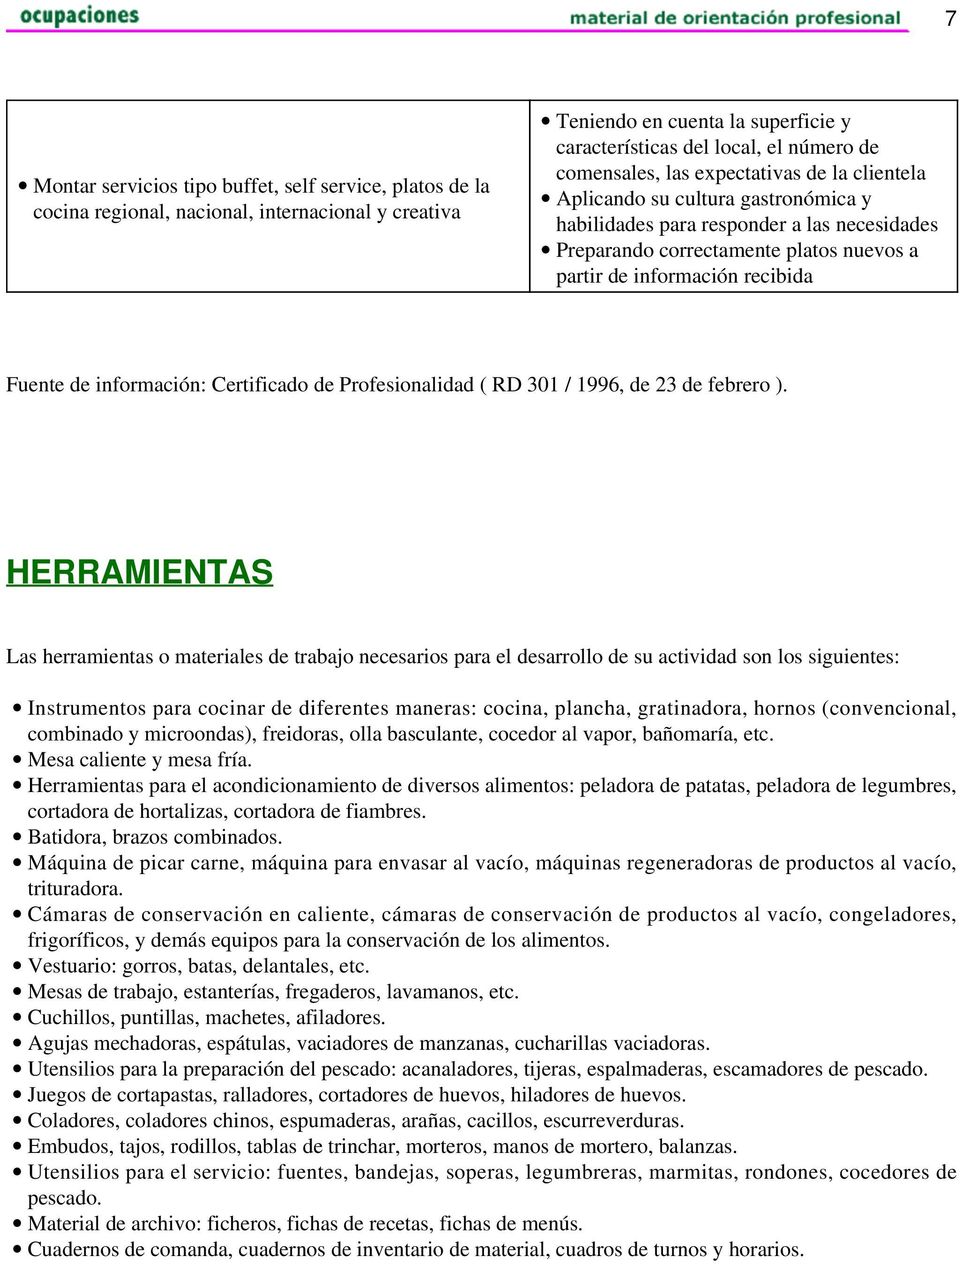 información: Certificado de Profesionalidad ( RD 301 / 1996, de 23 de febrero ).